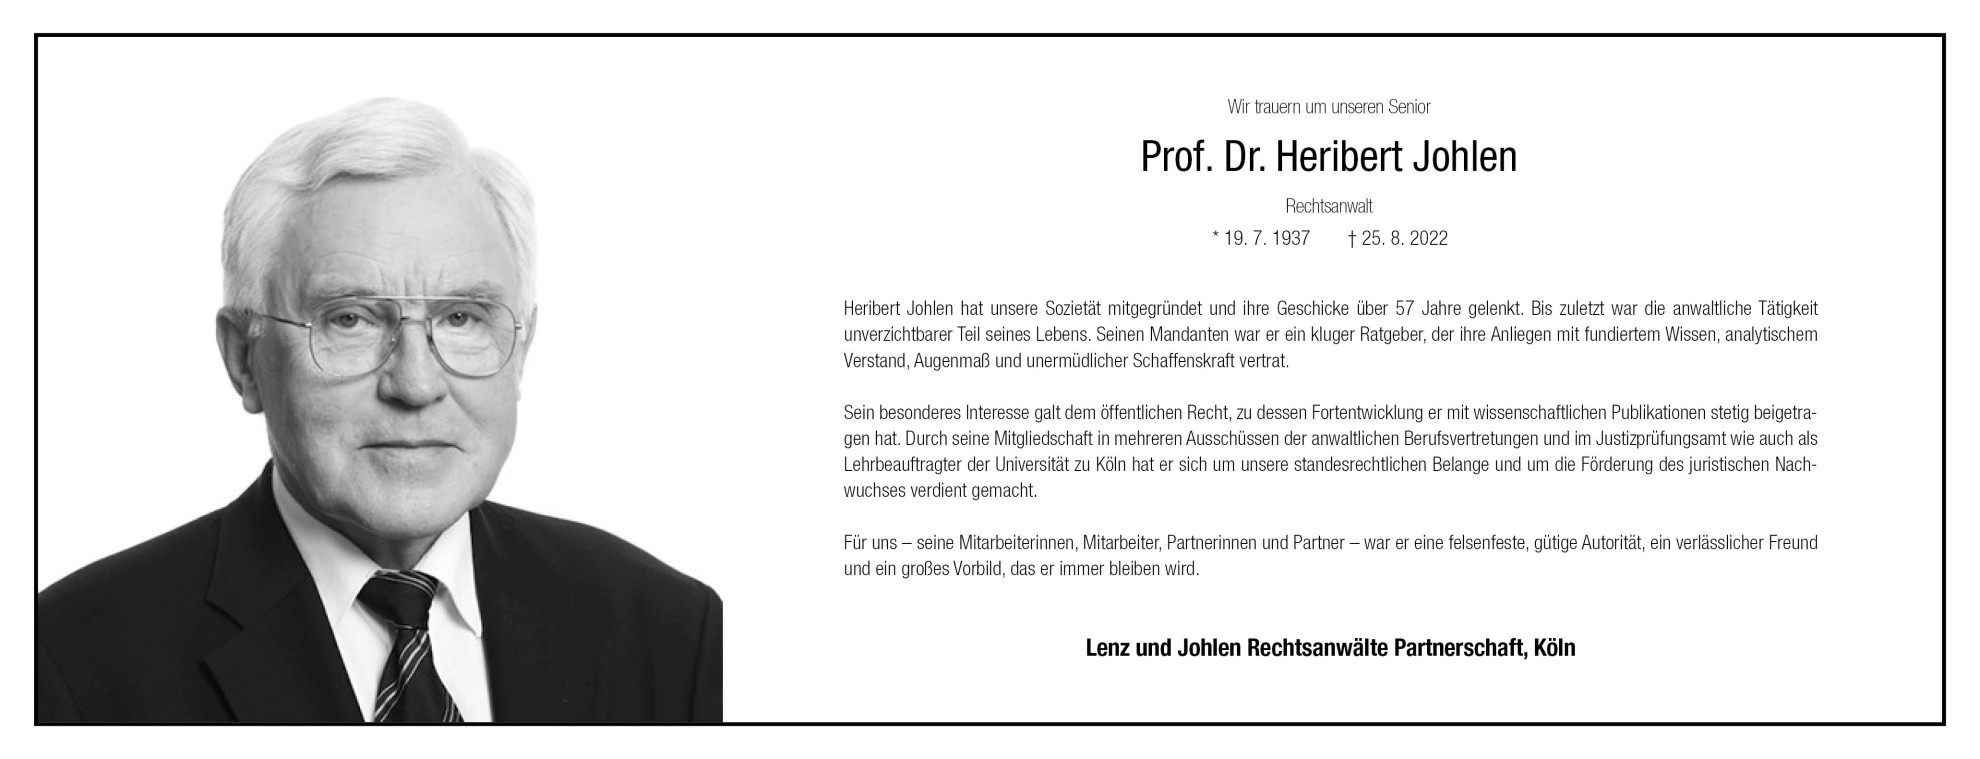 Prof. Dr. Heribert Johlen